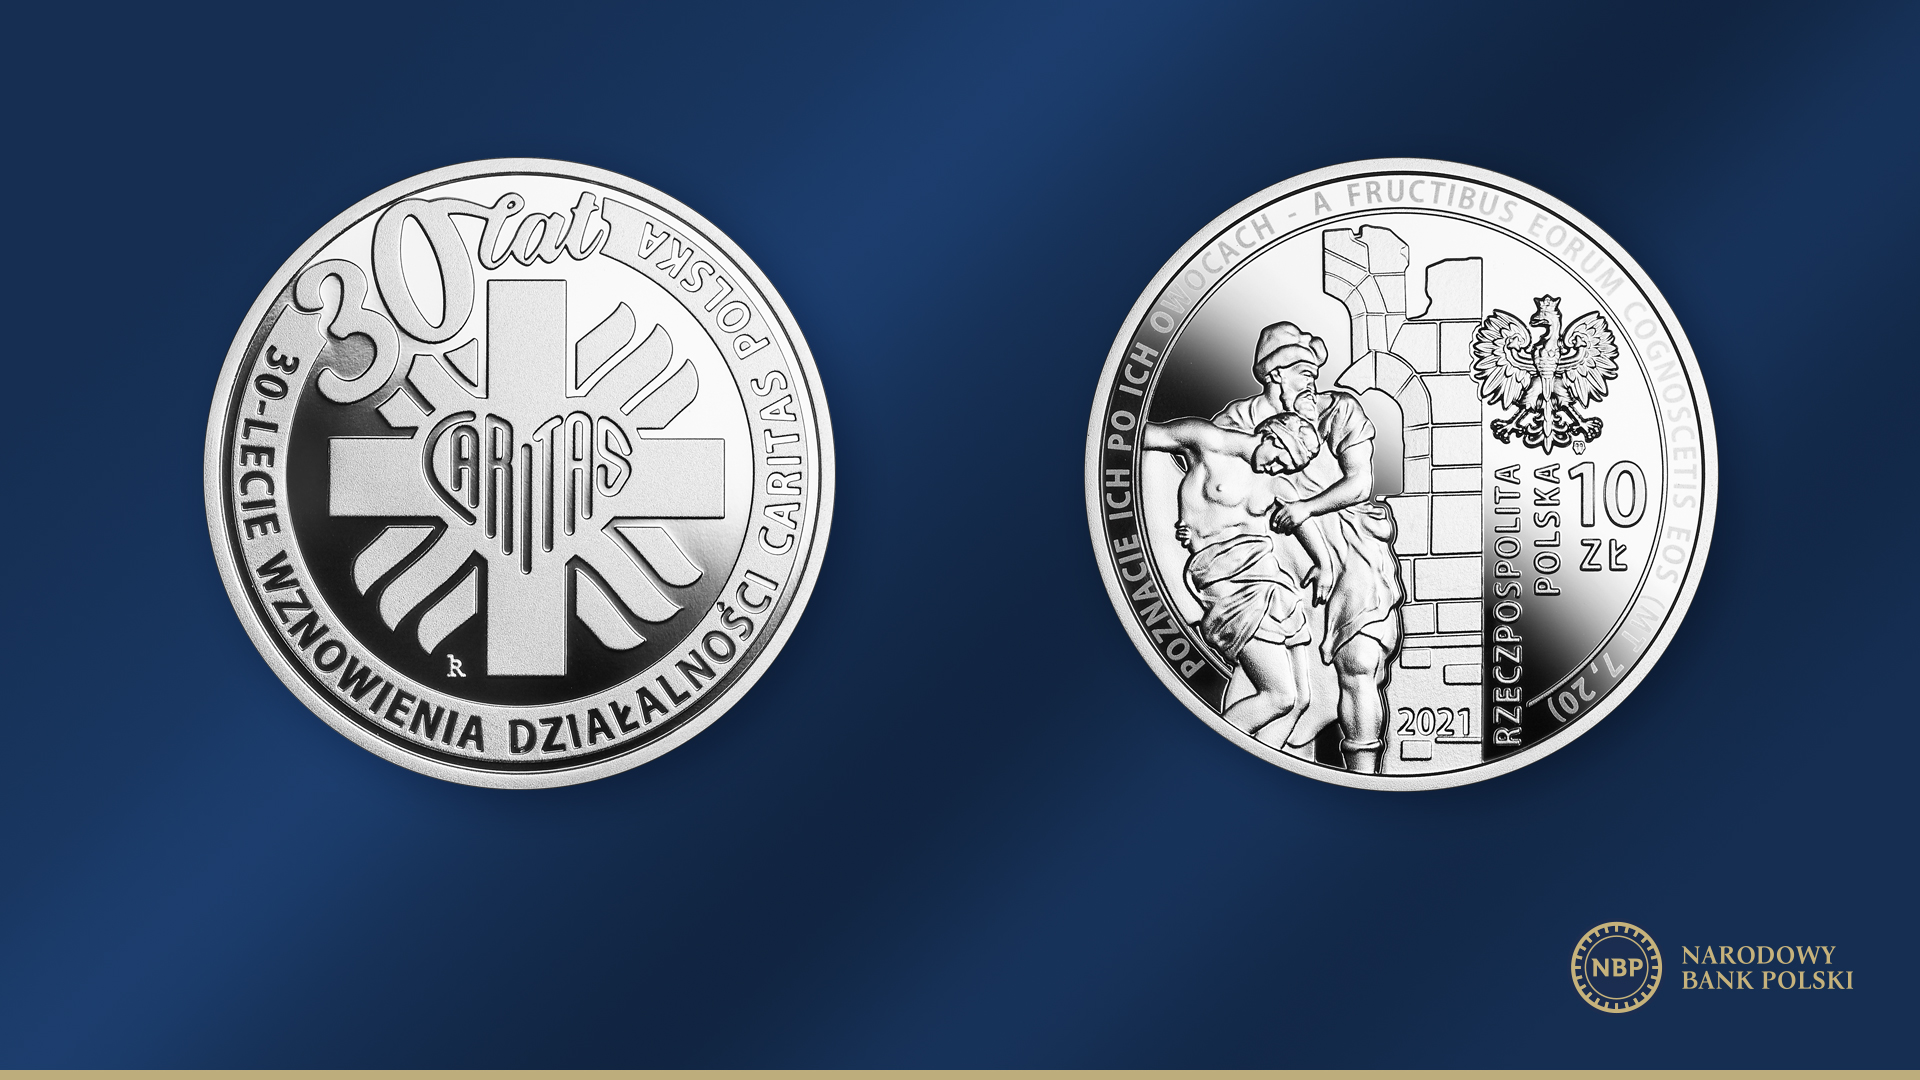 Moneta-30-lecie-wznowienia-dzialalnosci-Cartitas-Polska